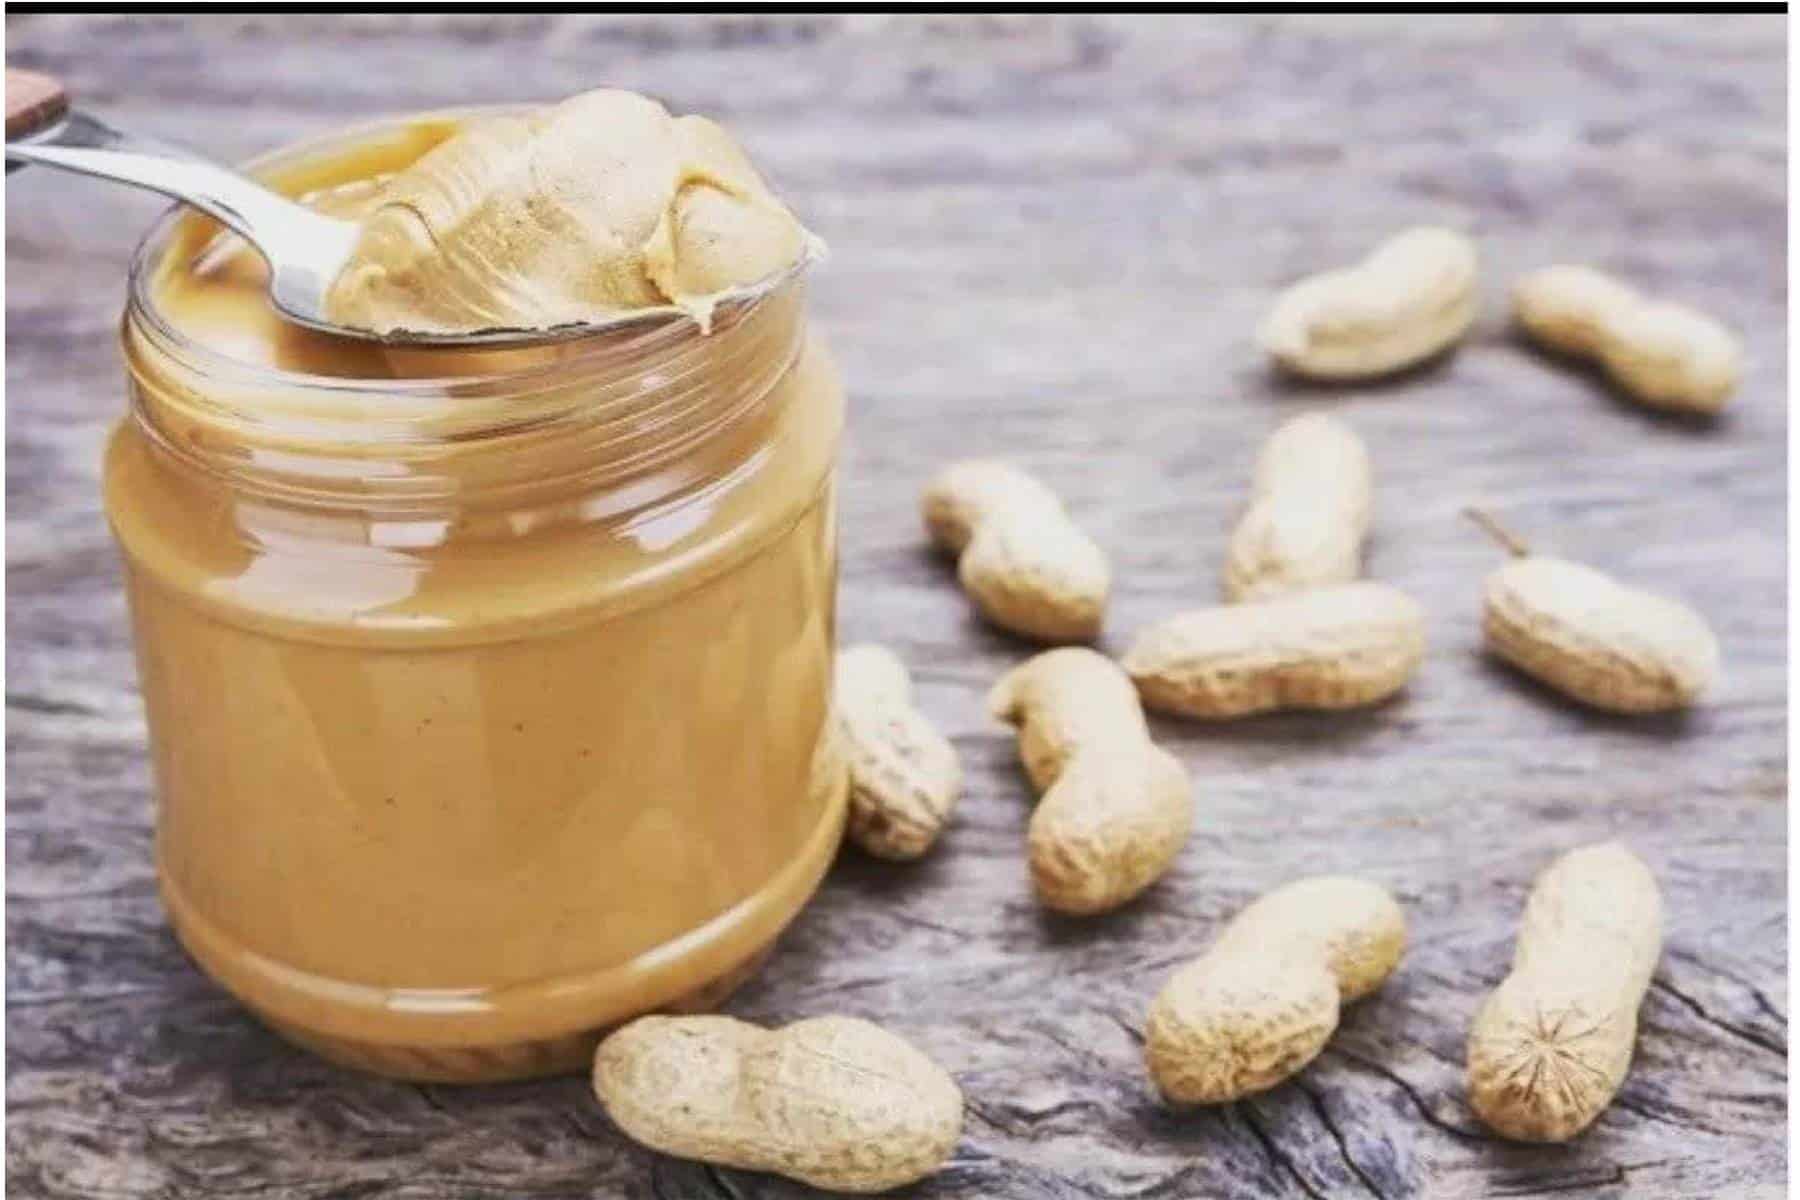 Aprenda a fazer uma deliciosa e saudável manteiga de amendoim